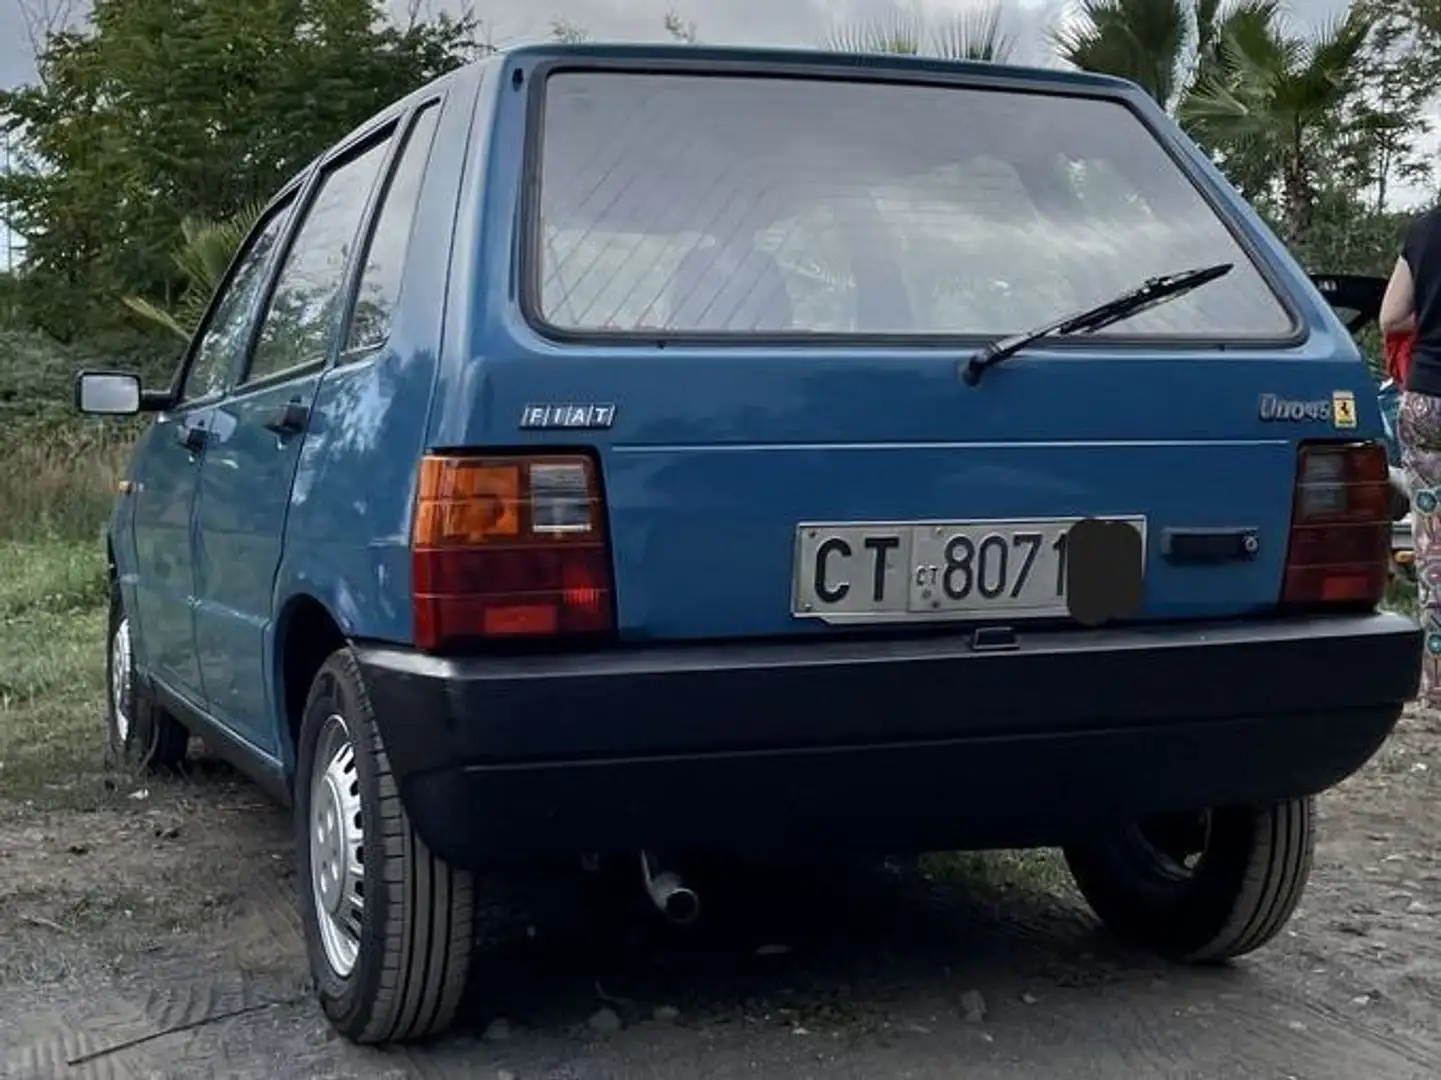 Fiat Uno 45 plava - 2